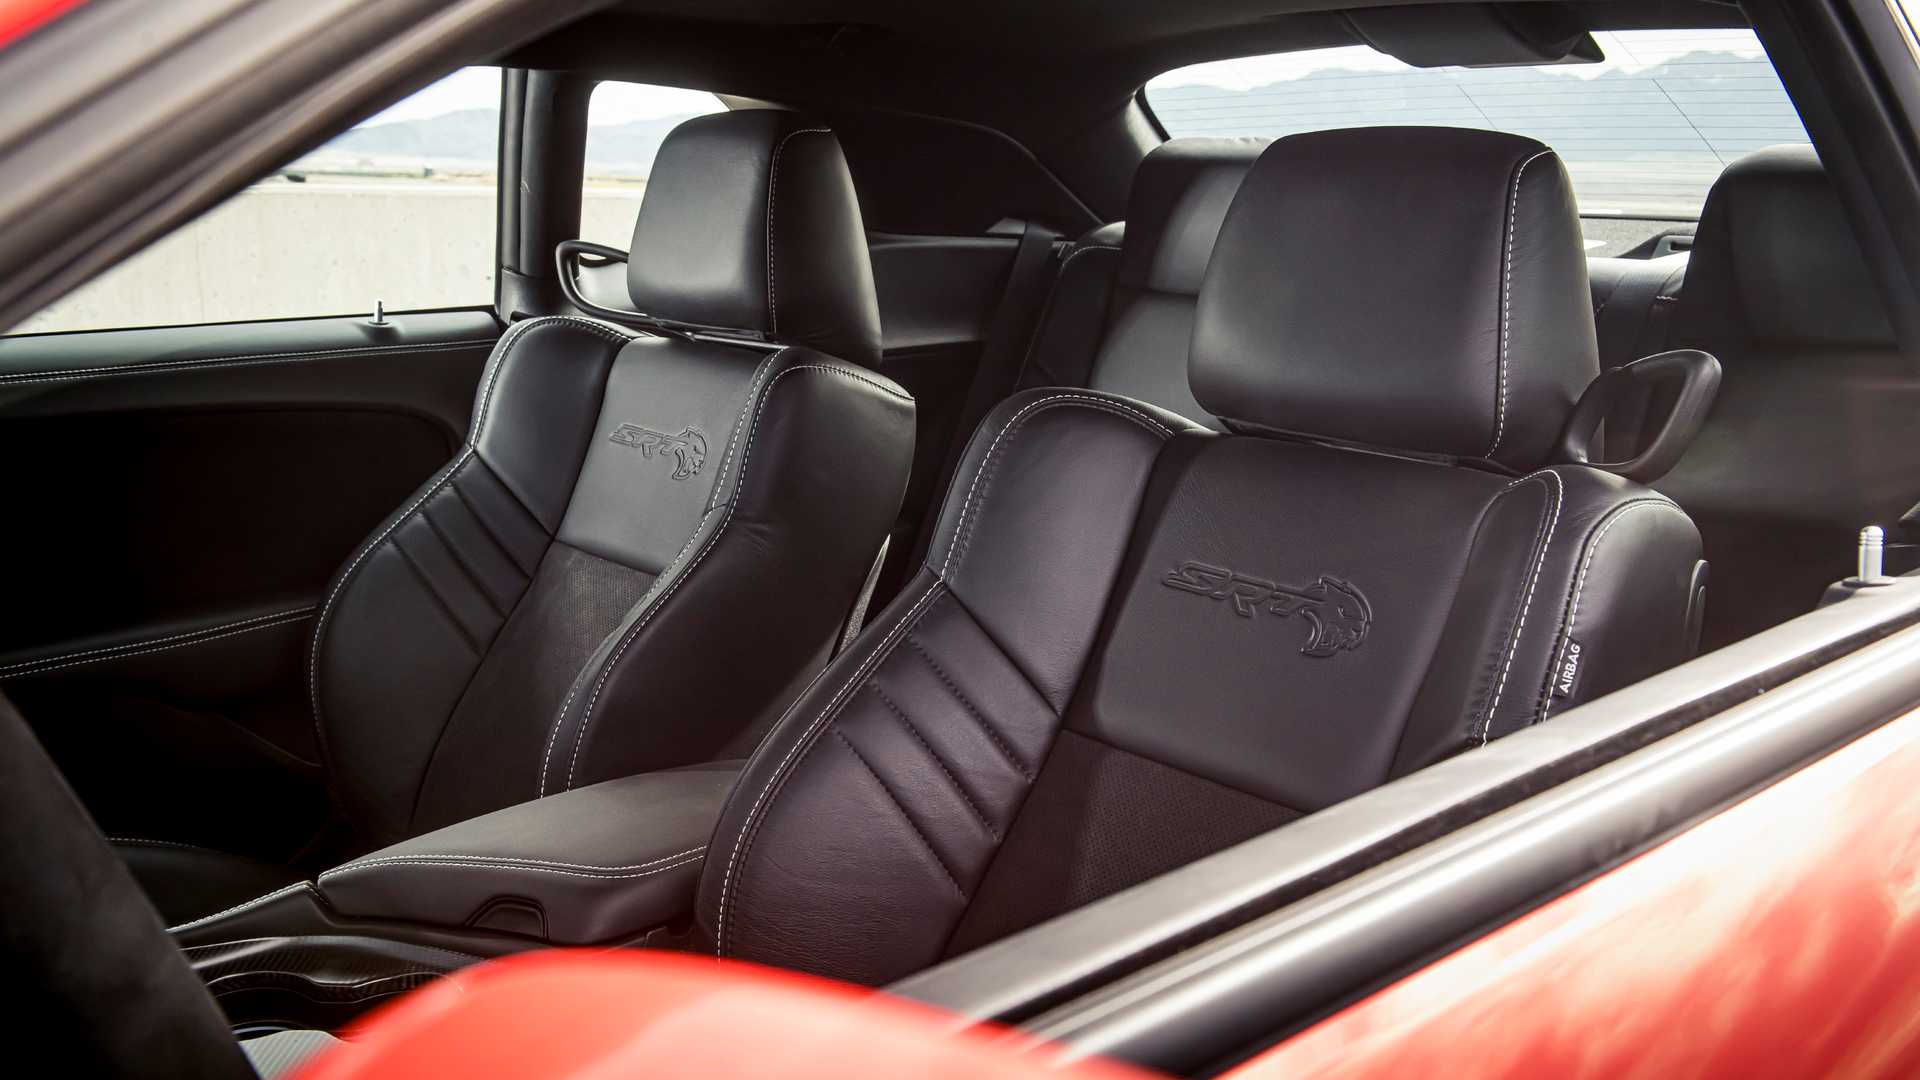 O Dodge Challenger foi o "Muscle Car" mais vendido dos Estados Unidos pelo segundo ano consecutivo